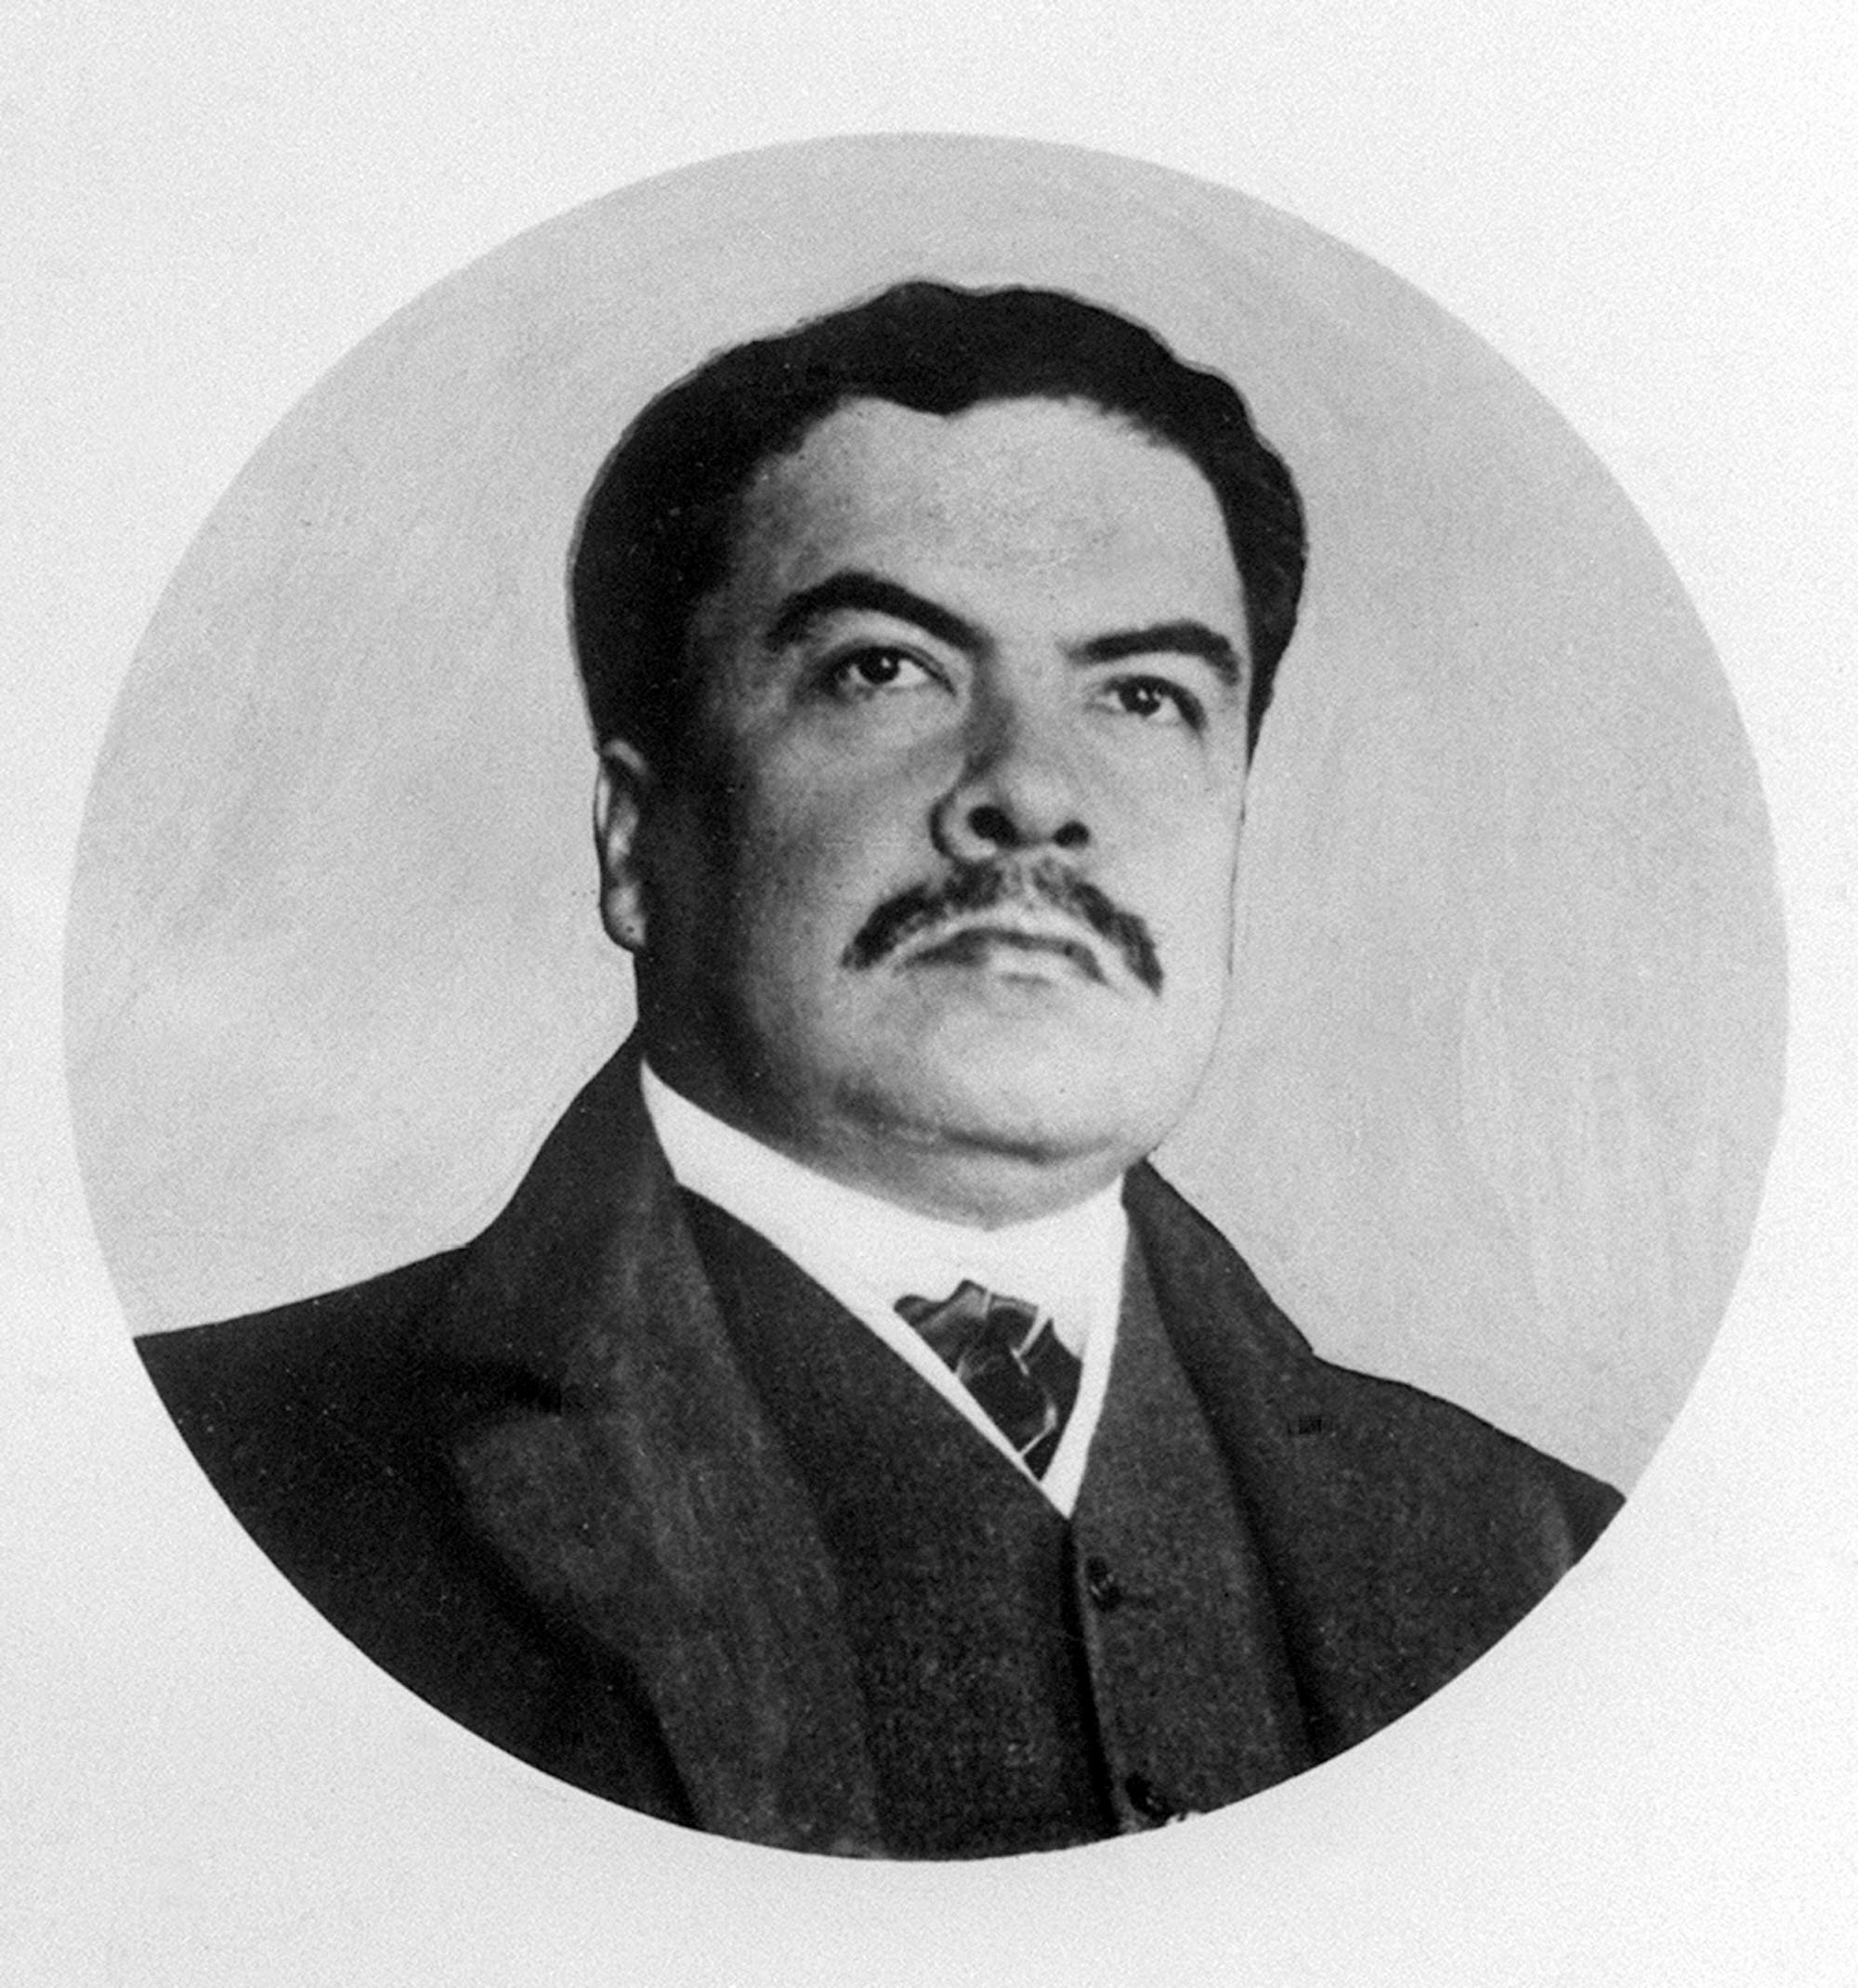 A Darío, quien nació el 18 de enero de 1867, se le conoce como el padre del Modernismo, un movimiento que impactó la cultura hispanoamericana.